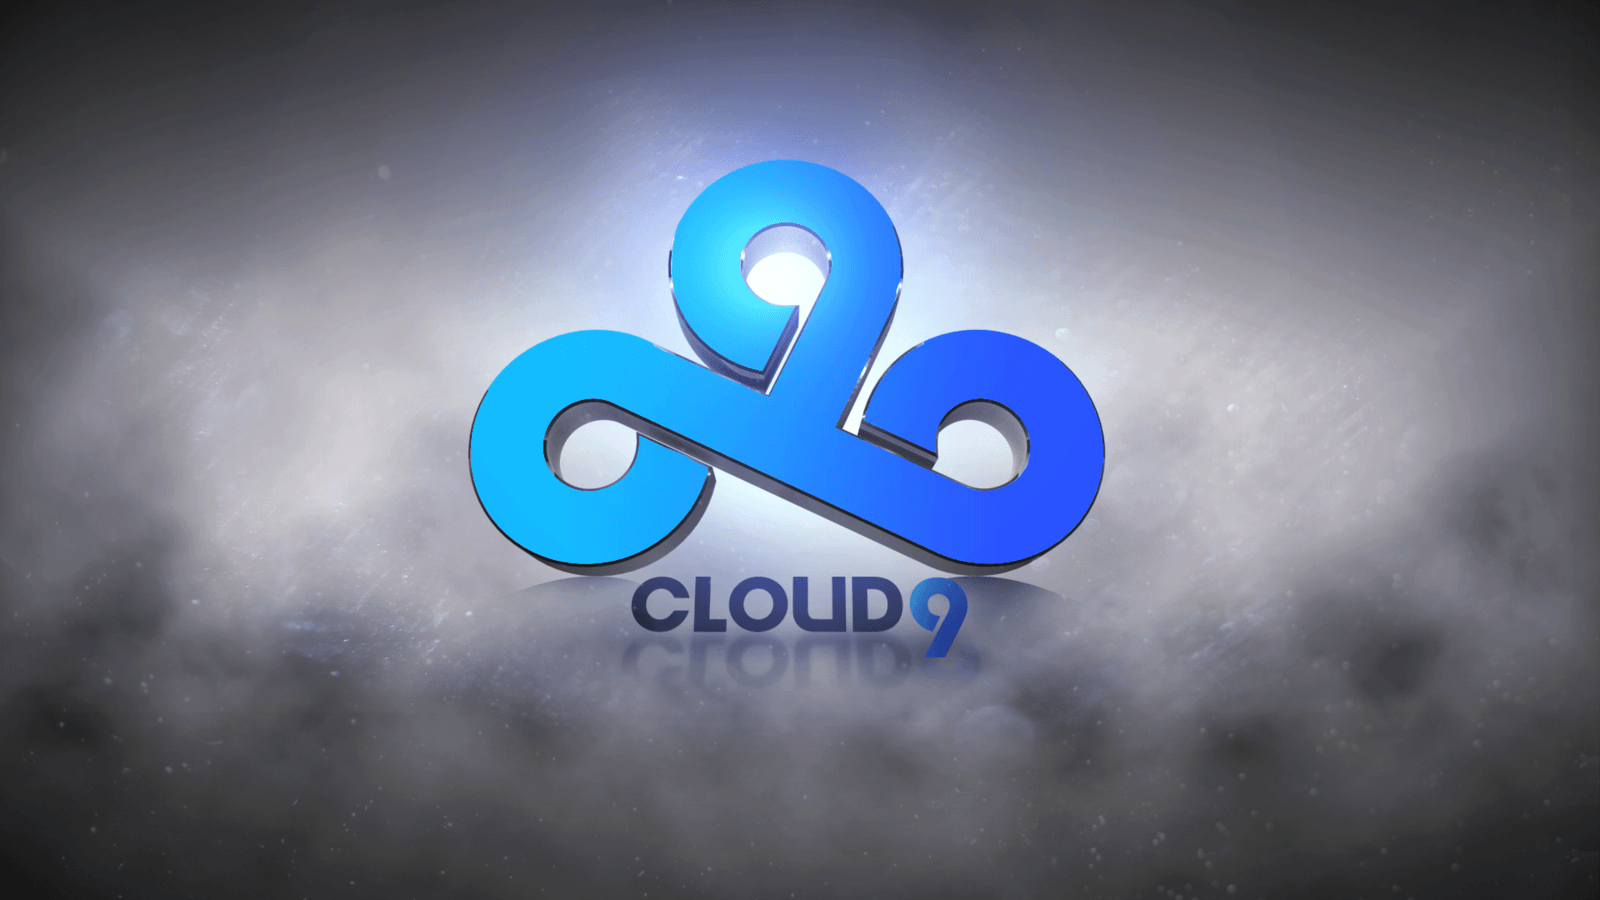 Cloud 9 CS GO Wallpaper